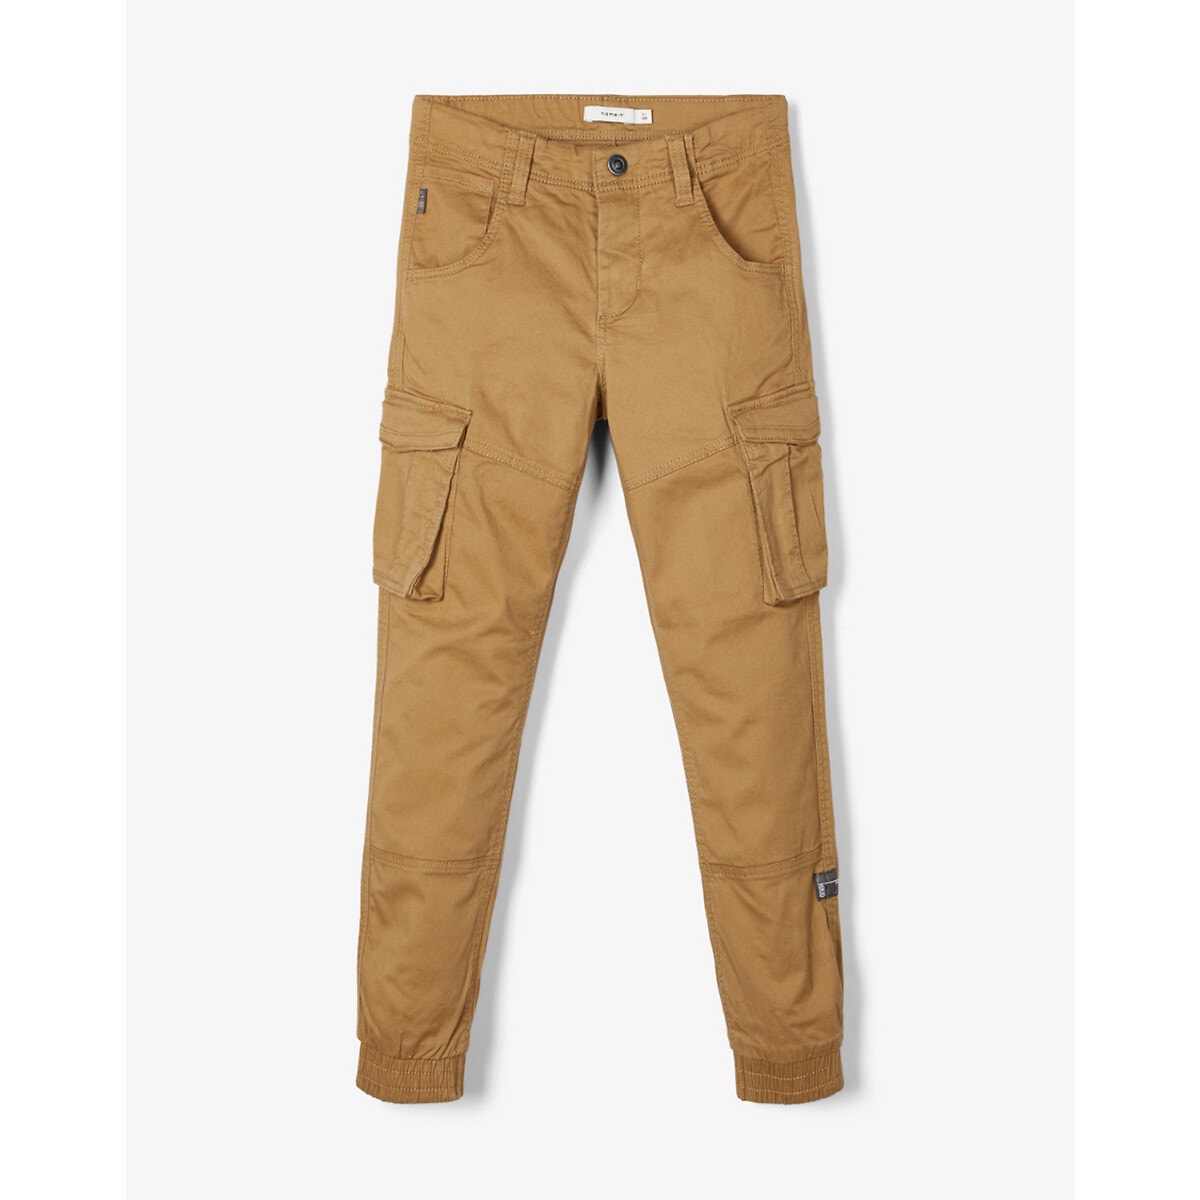 Παντελόνι με μεγάλες τσέπες, 6-14 ετών ΠΑΙΔΙ | Παντελόνια